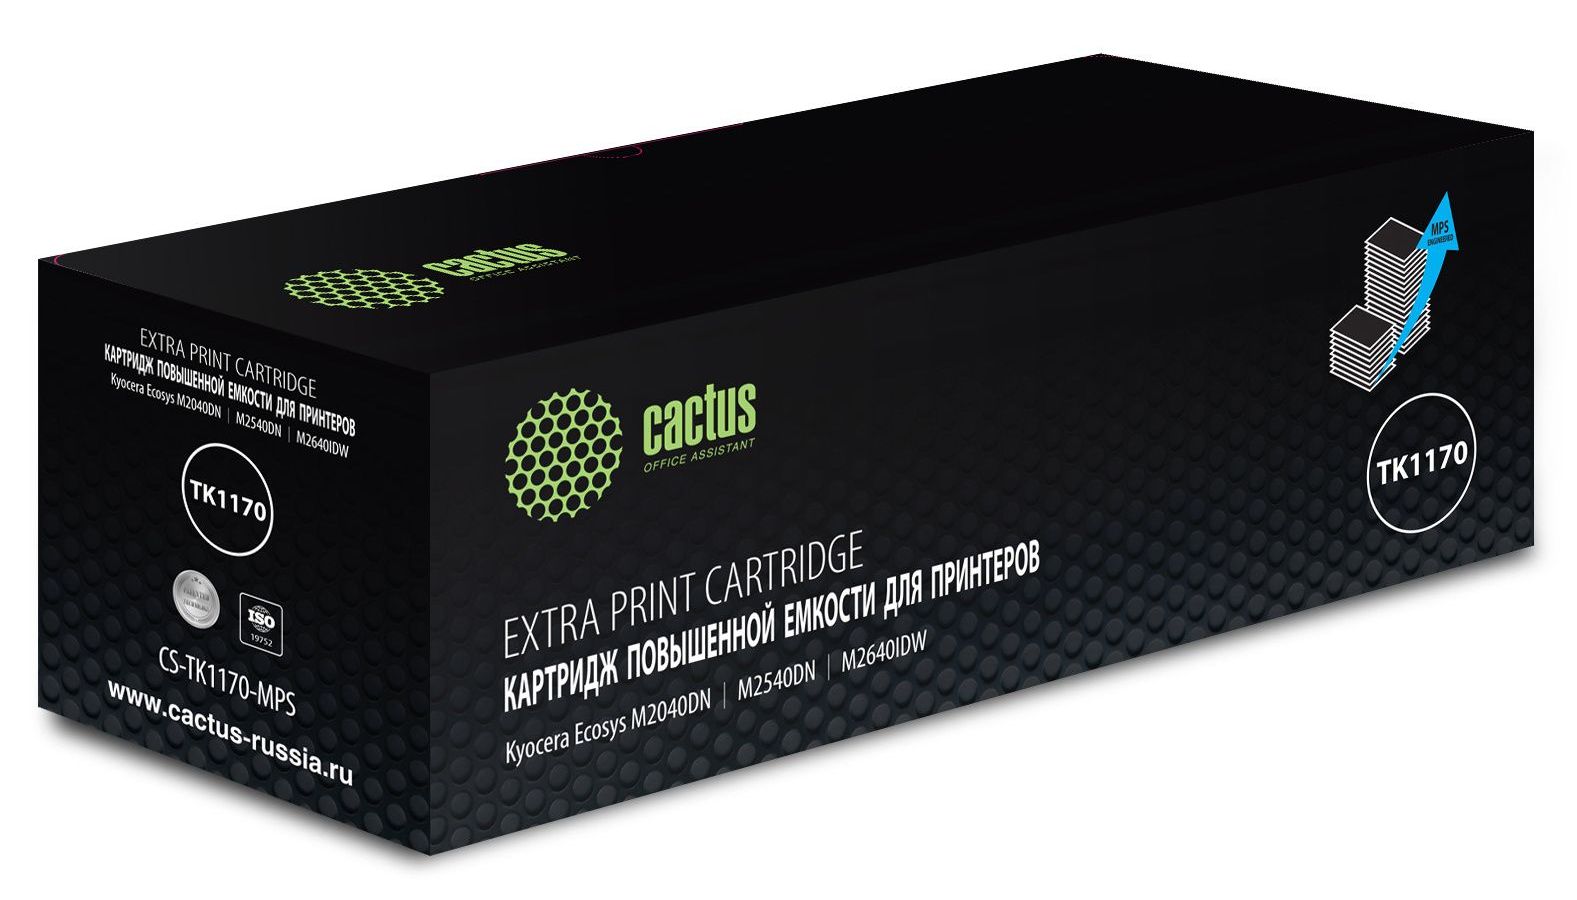 Картридж лазерный Cactus CS-TK1170-MPS черный (12000стр.) для Kyocera Ecosys M2040dn/ M2540dn/M2640idw